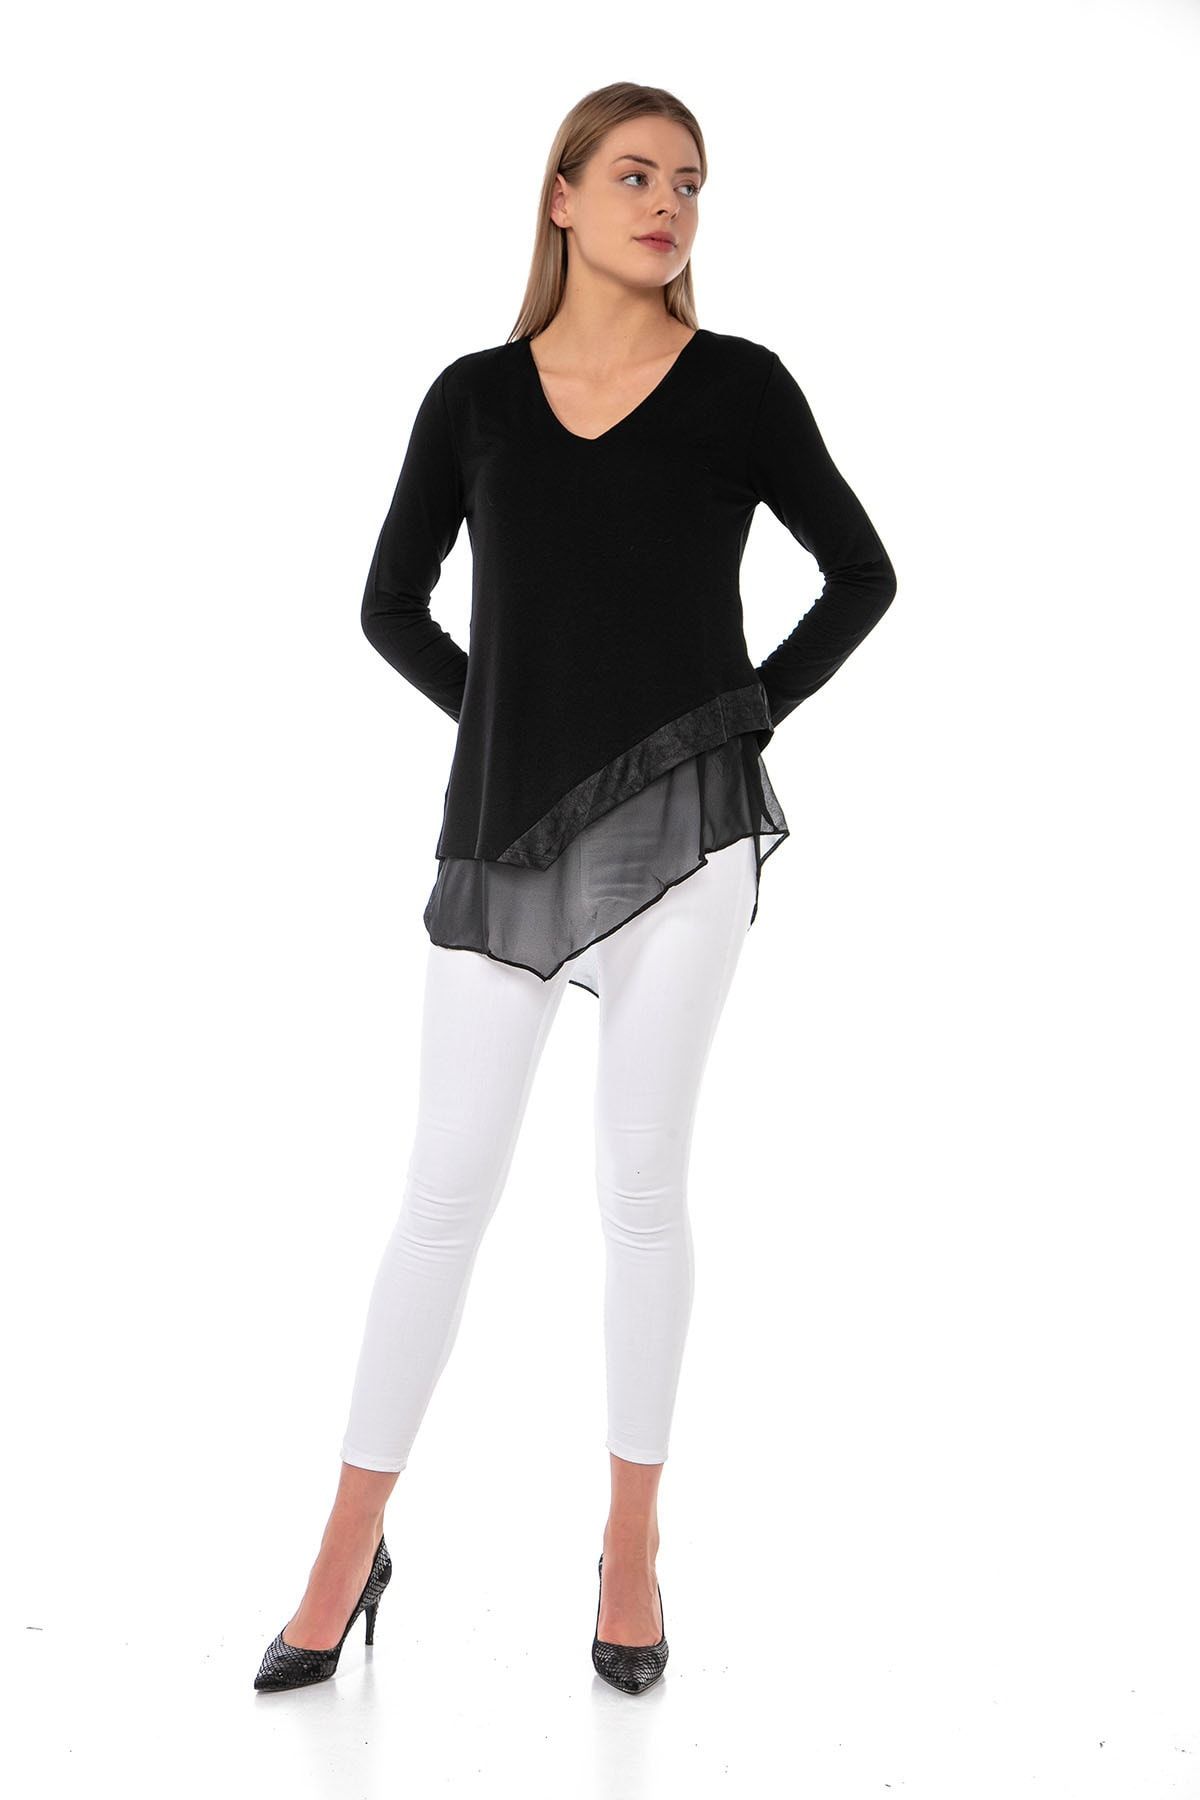 EtkiModa Kadın Siyah V Yaka Uzun Kollu Şifon Astarlı Eteği Deri Detaylı Asimetrik Mevsimlik Triko Tunik Bluz